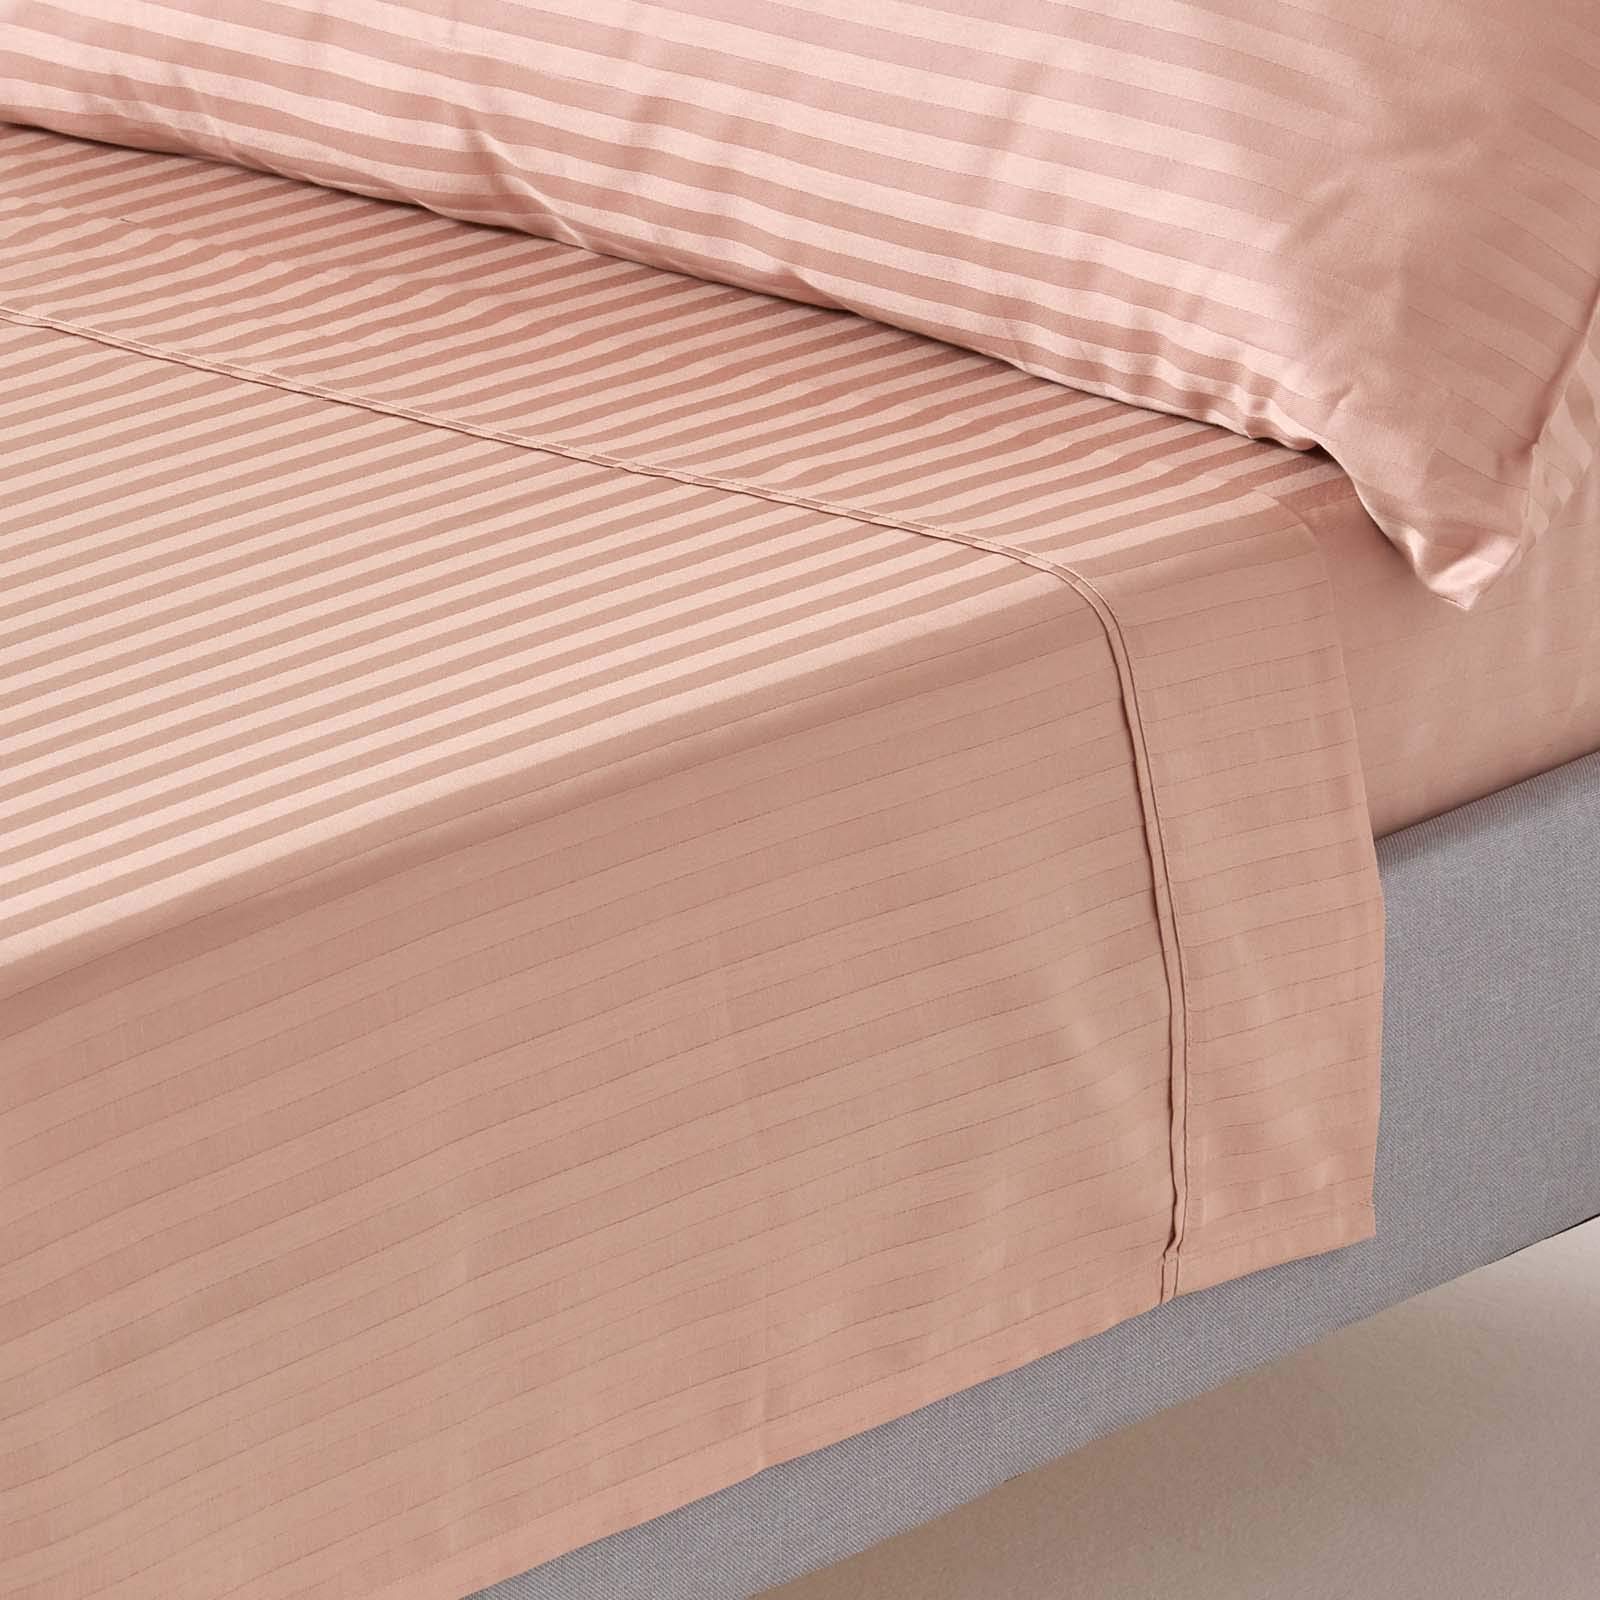 HOMESCAPES Damast Bettlaken ohne Gummizug taupe-beige 178x255 cm, Baumwoll-Betttuch Satin-Streifen, Haustuch ägyptische Baumwolle